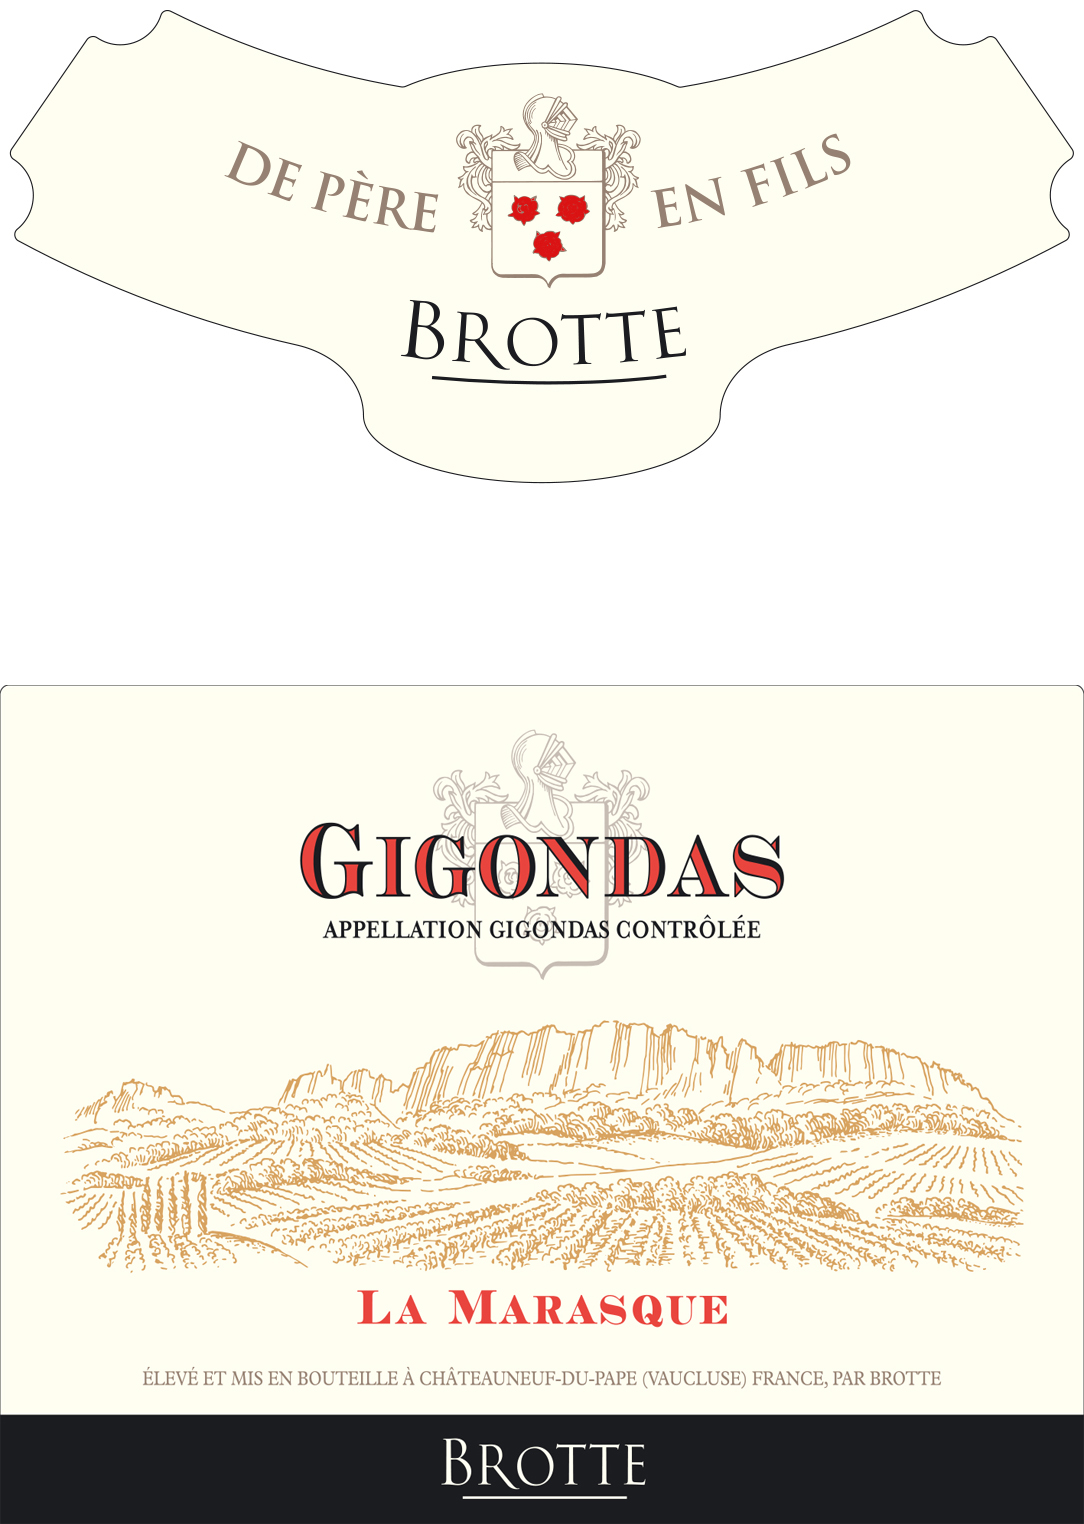 Brotte - La Marasque Gigondas label